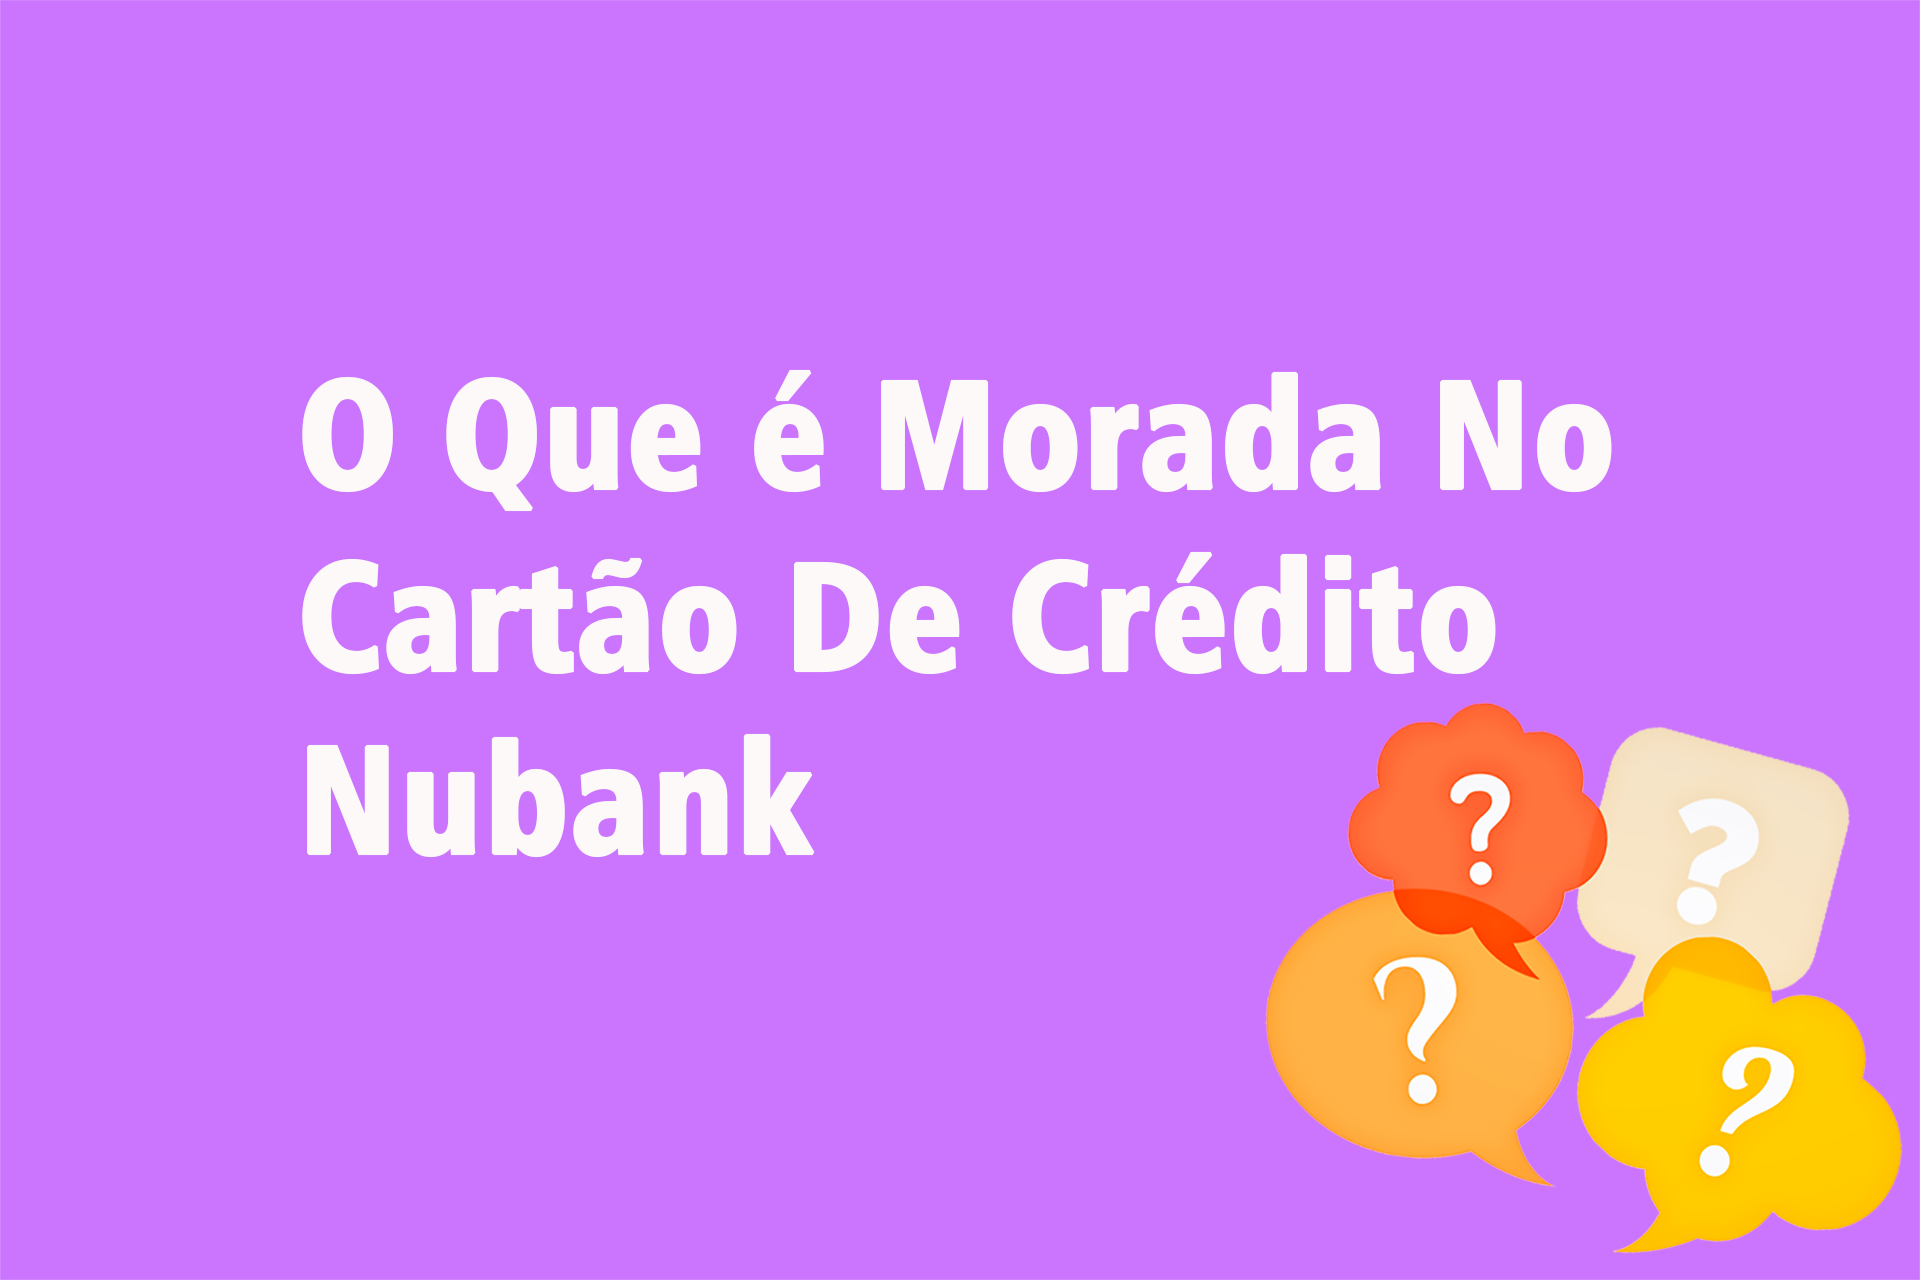 O Que é Morada No Cartão De Crédito Nubank?